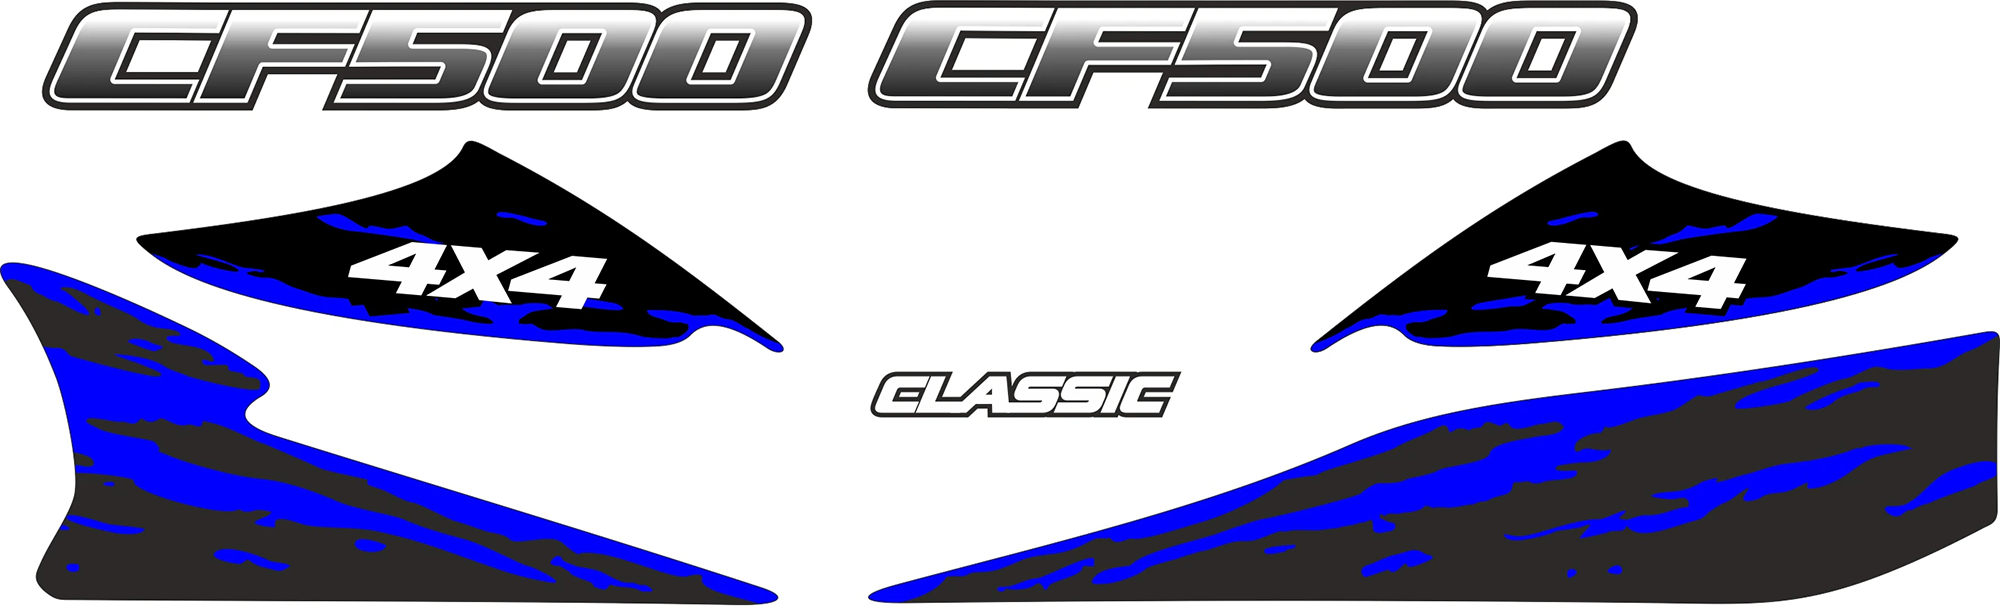 Комплект наклеек CF MOTO CF 500-2 500-2A